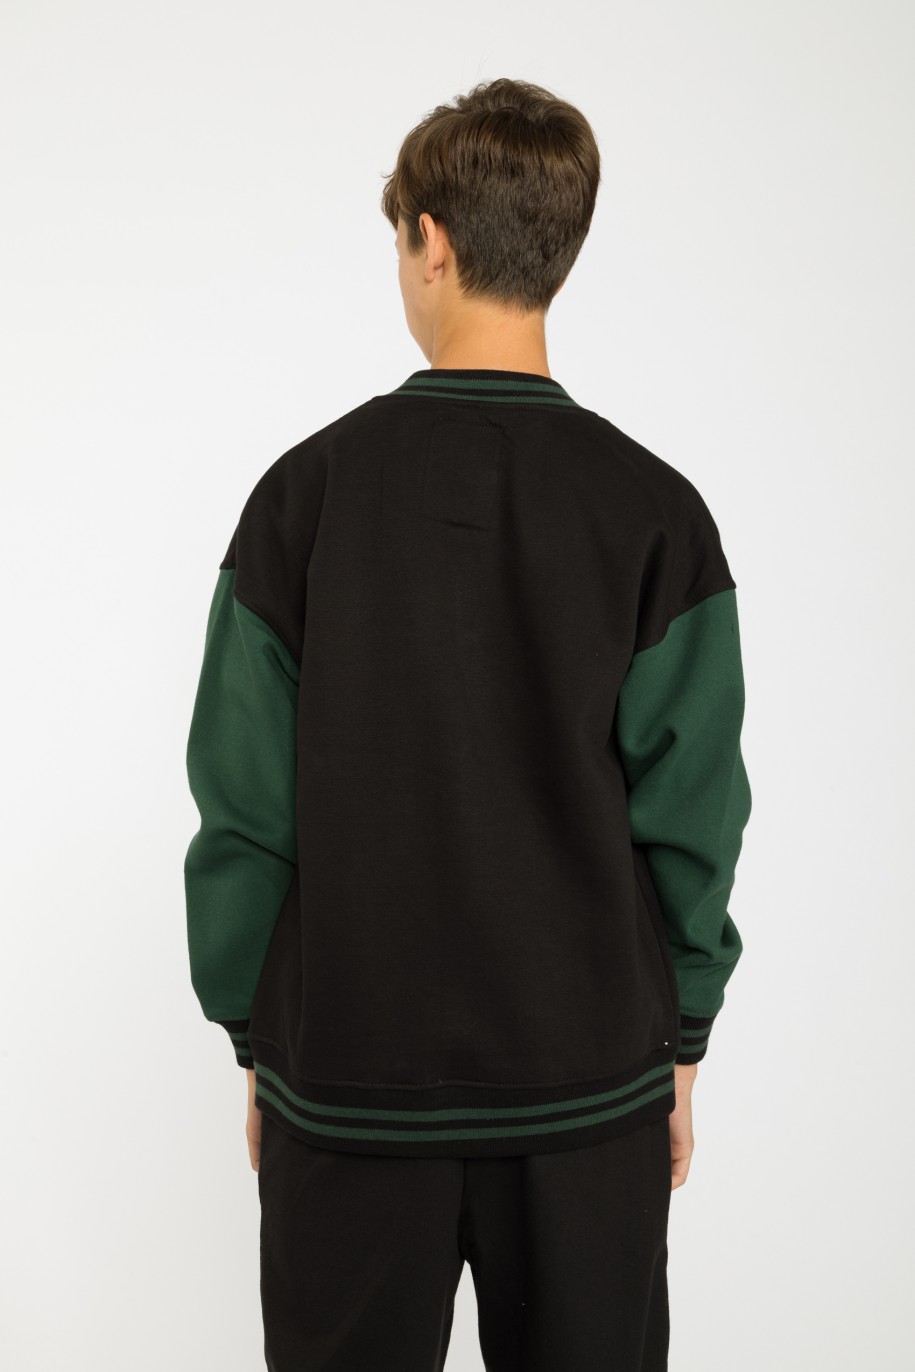 Czarna rozpinana bluza bejsbolówka z zielonymi rękawami - 37870